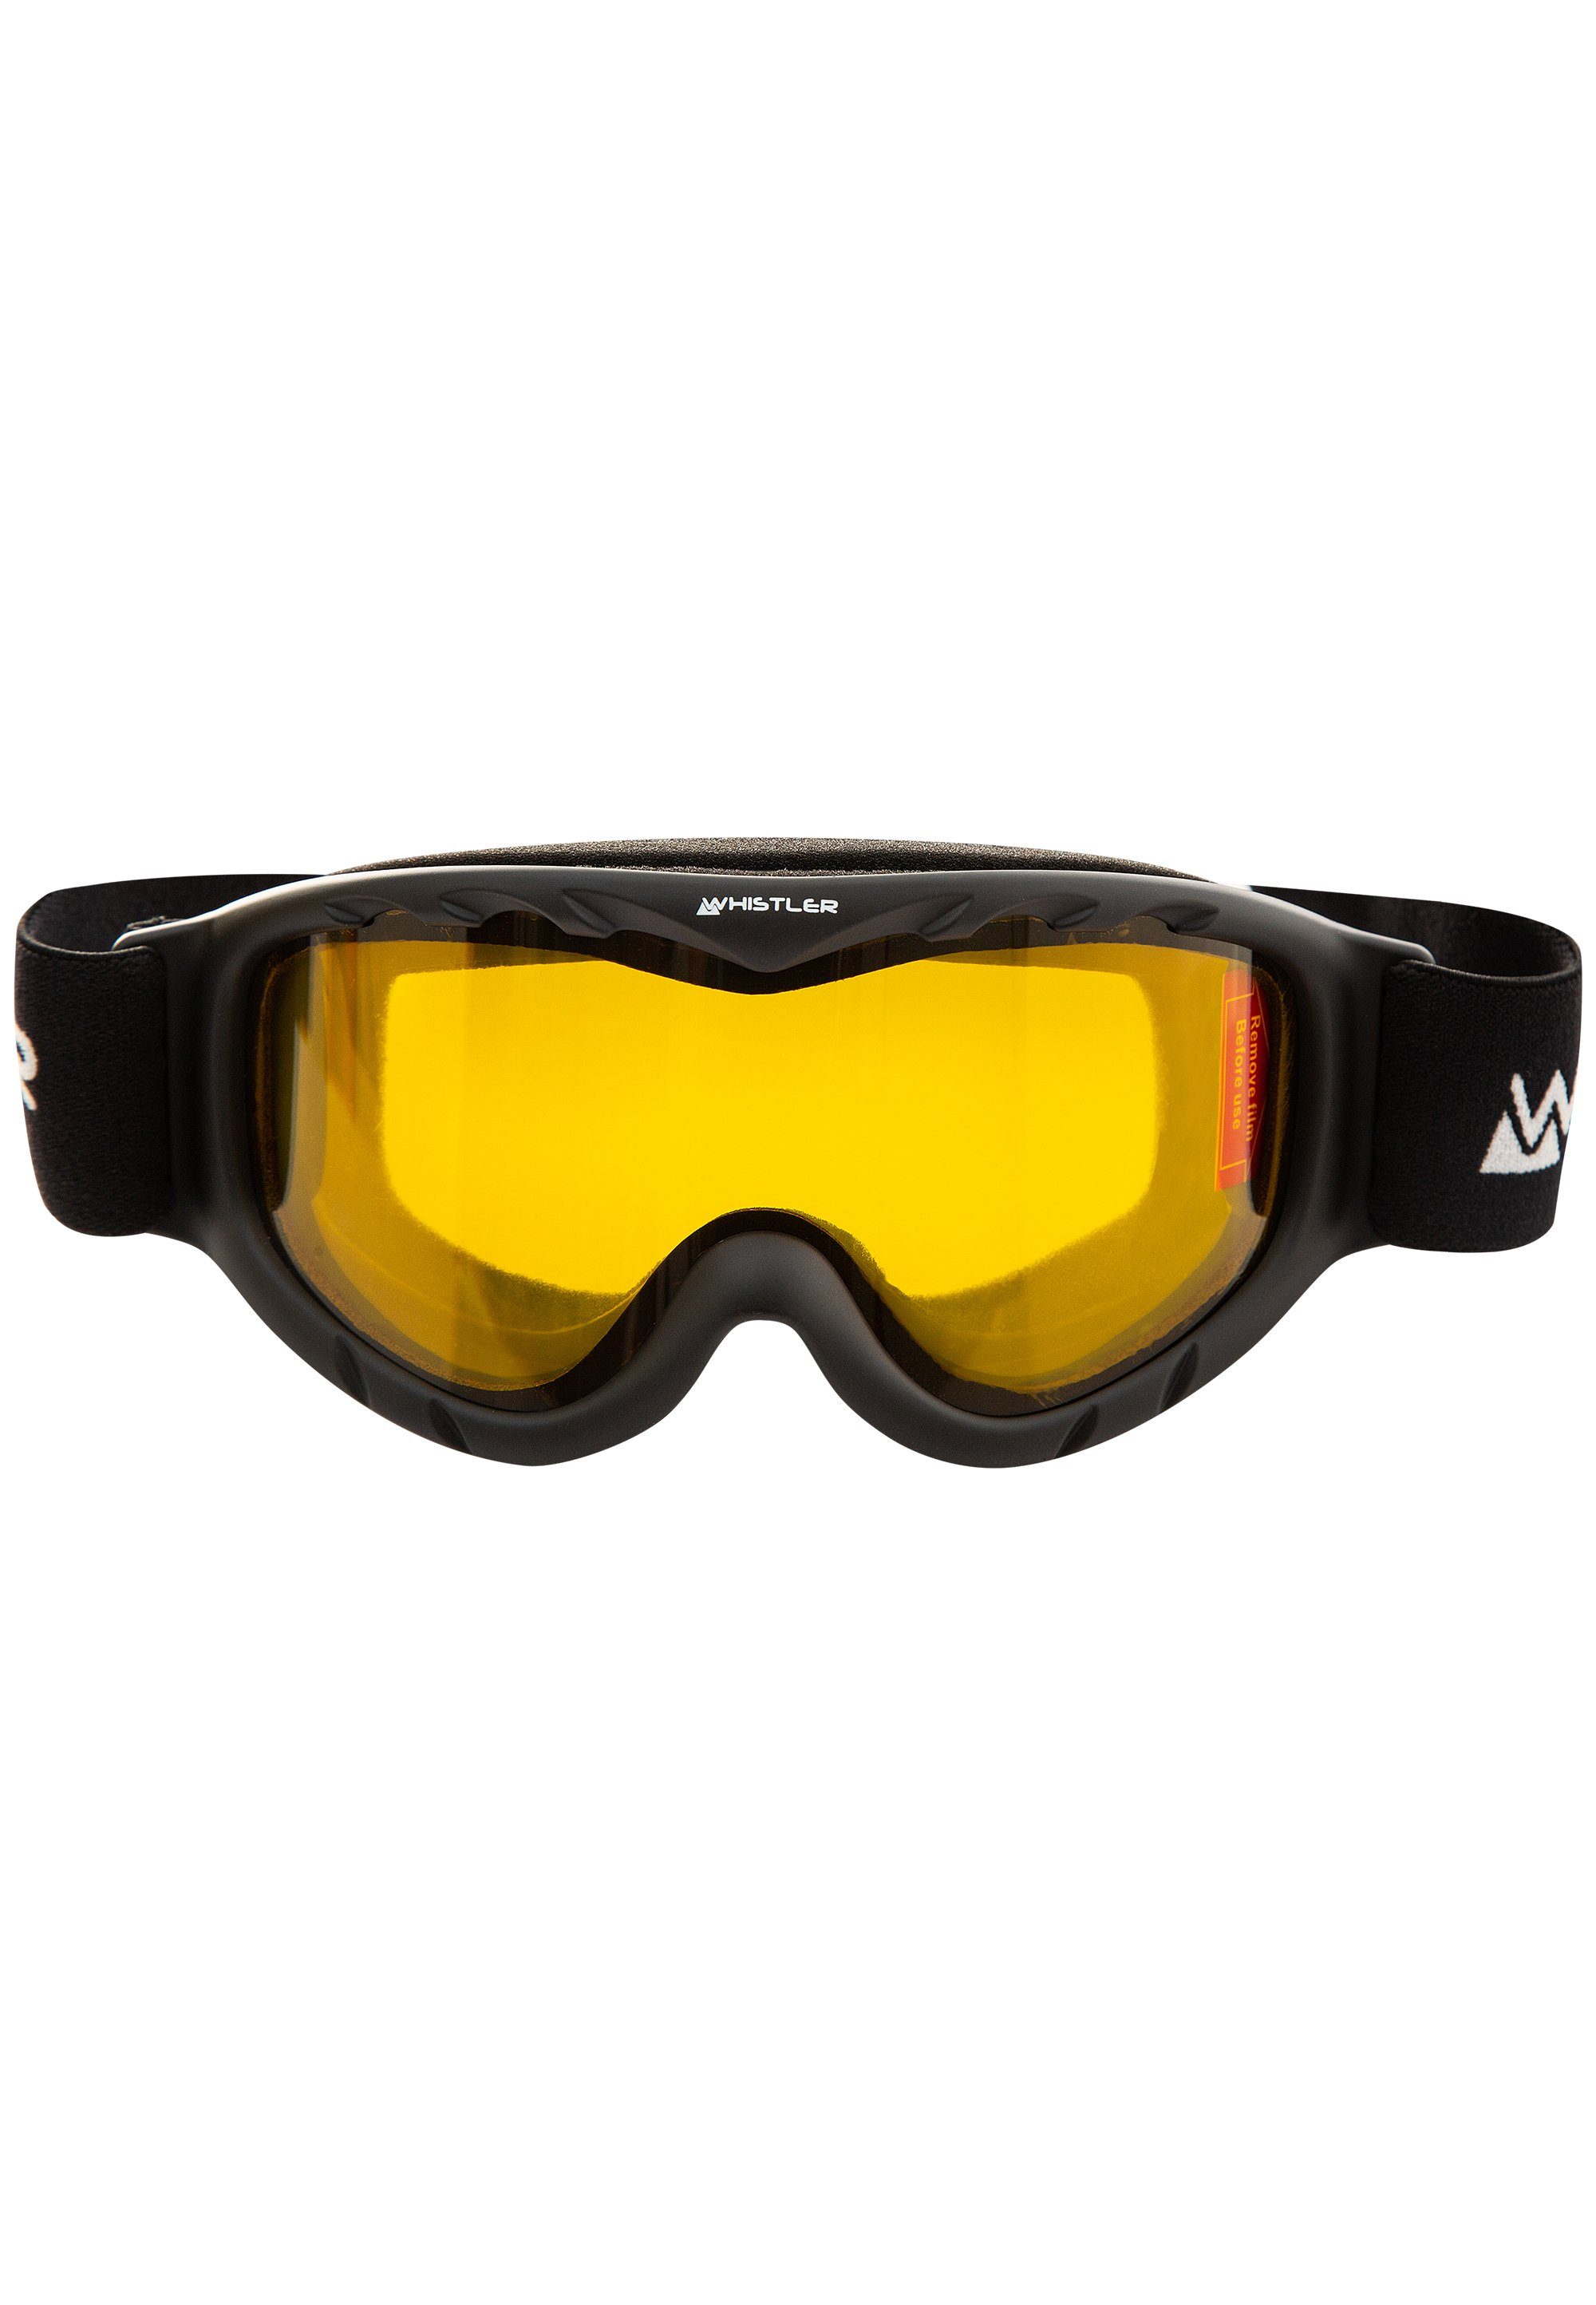 WHISTLER Skibrille WS300 Jr. Goggle, Ski mit Anti-Fog-Beschichtung